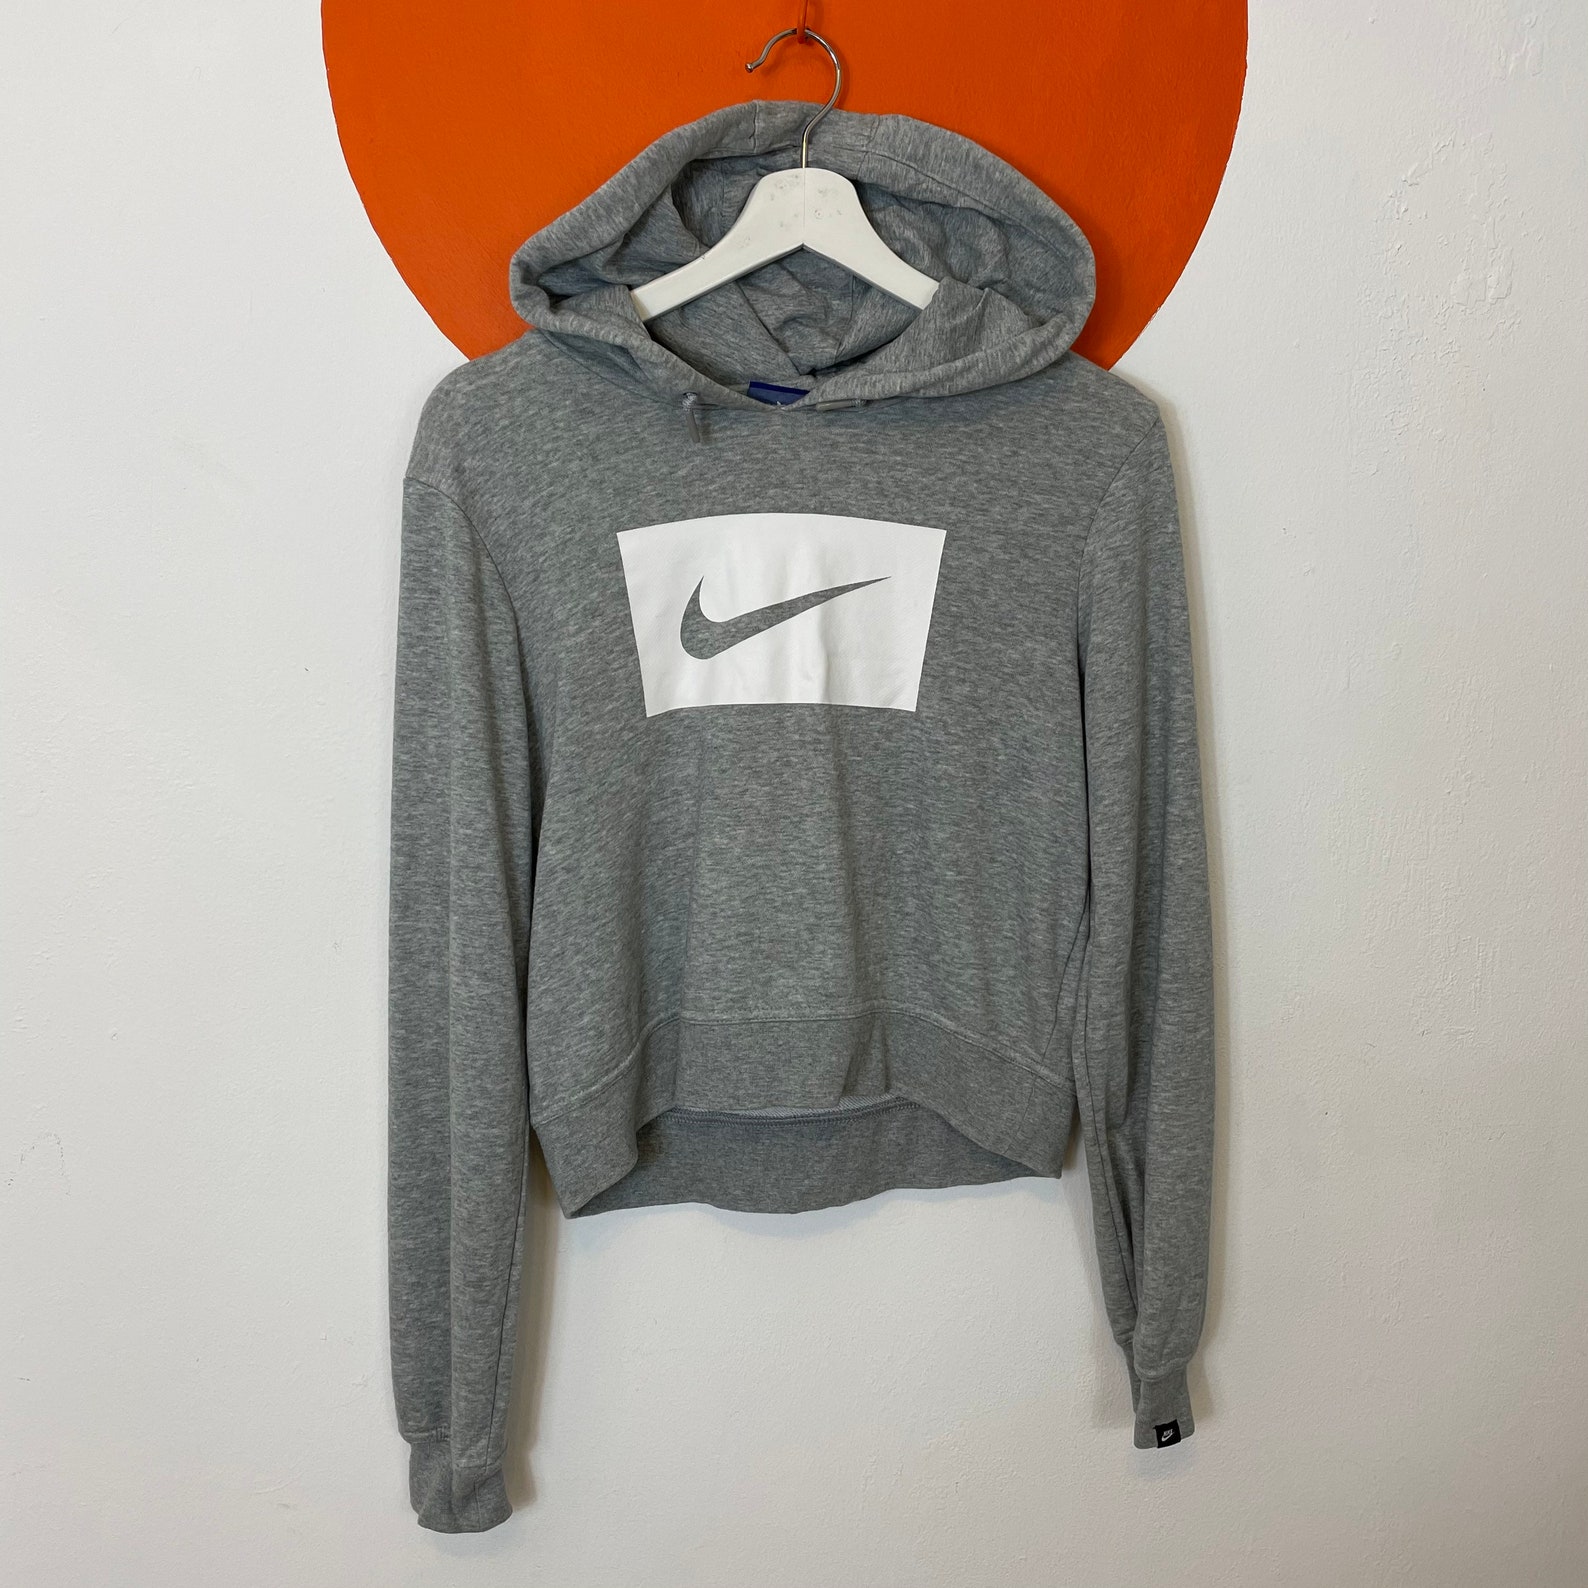 Women's Nike Cropped Hoodie Sweater Sweatshirt Top Grey UK | Etsy